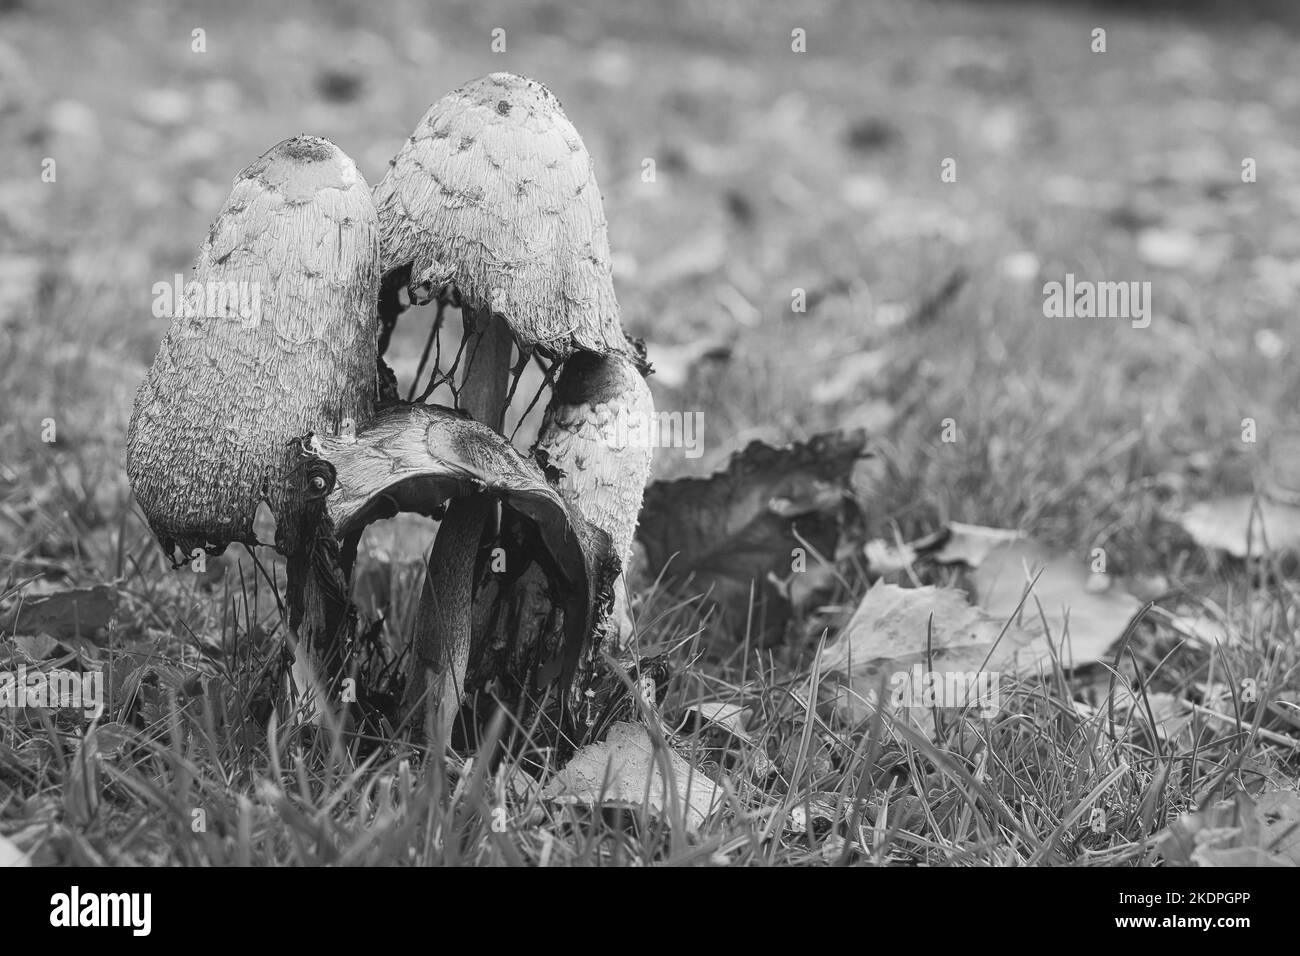 un groupe de vieux crénlage pris en noir et blanc, dans une prairie en décomposition. Le champignon est moisi et en décomposition. Photo de la nature d'un pré Banque D'Images